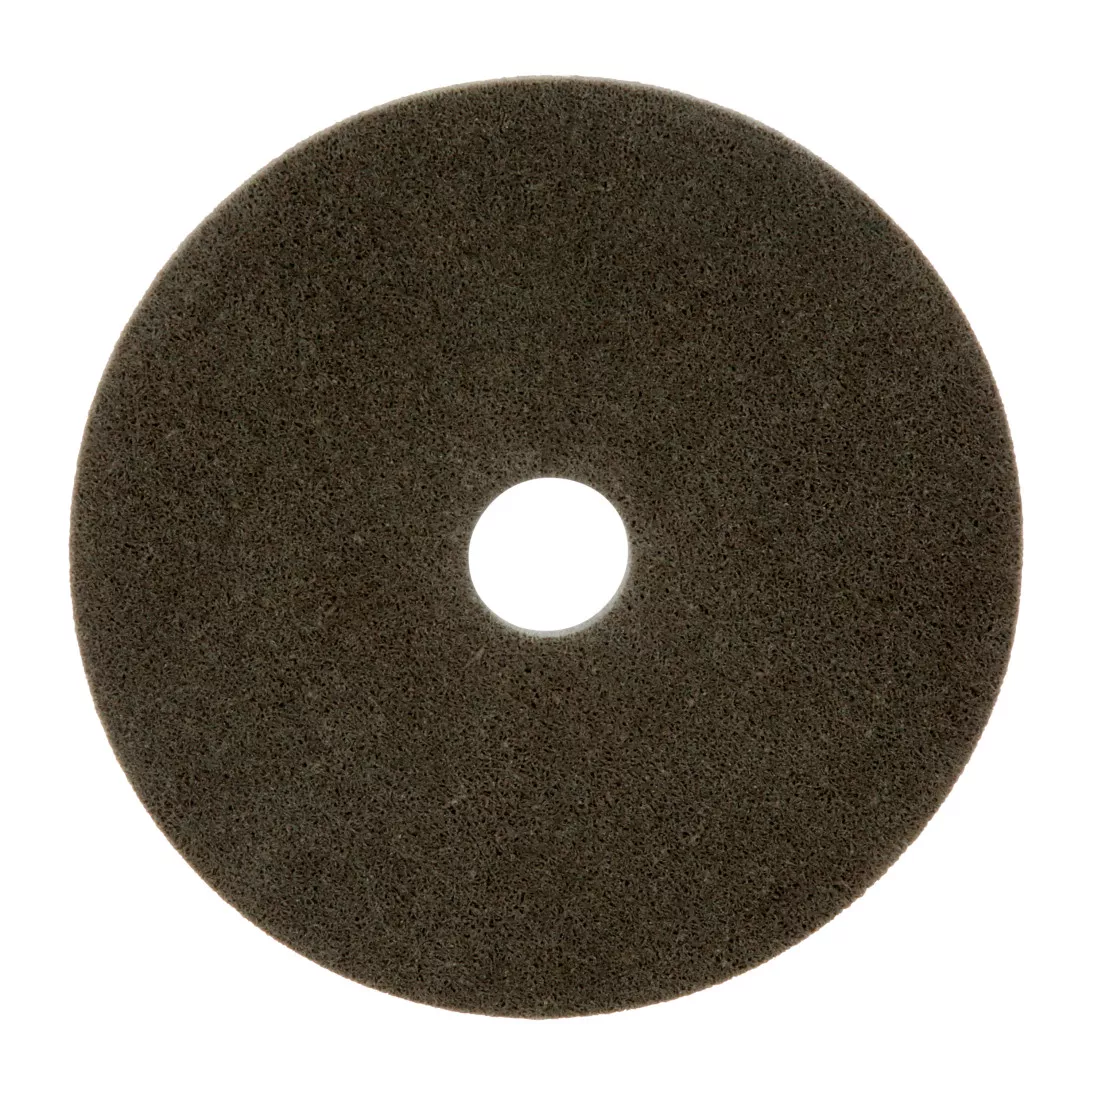 Standard Abrasives™ A/O Unitized Wheel 882174, 821 6 in x 1/4 in x 1 in,
10 ea/Case